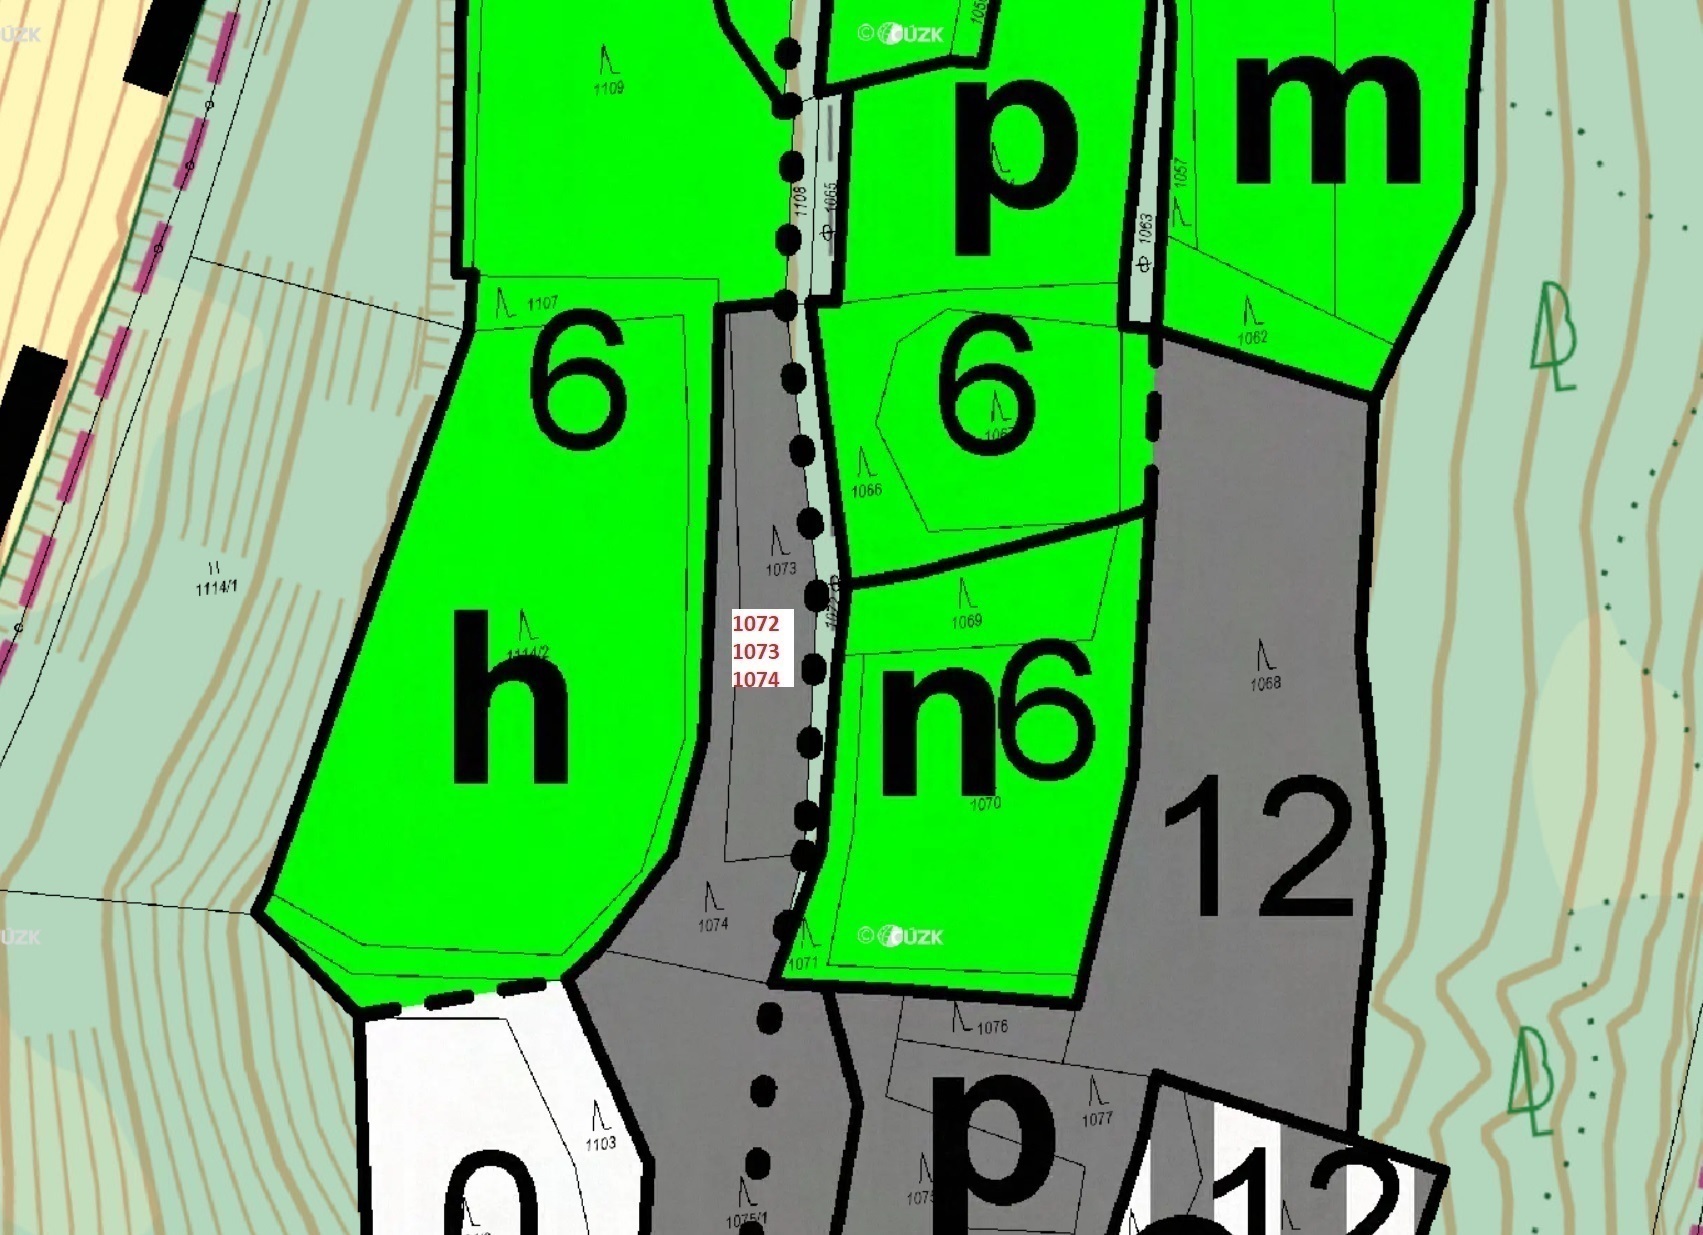 Lesní pozemky a ostatní plocha o výměře 1 586 m2, podíl 1/1, k.ú. Křížlice, okres Semily